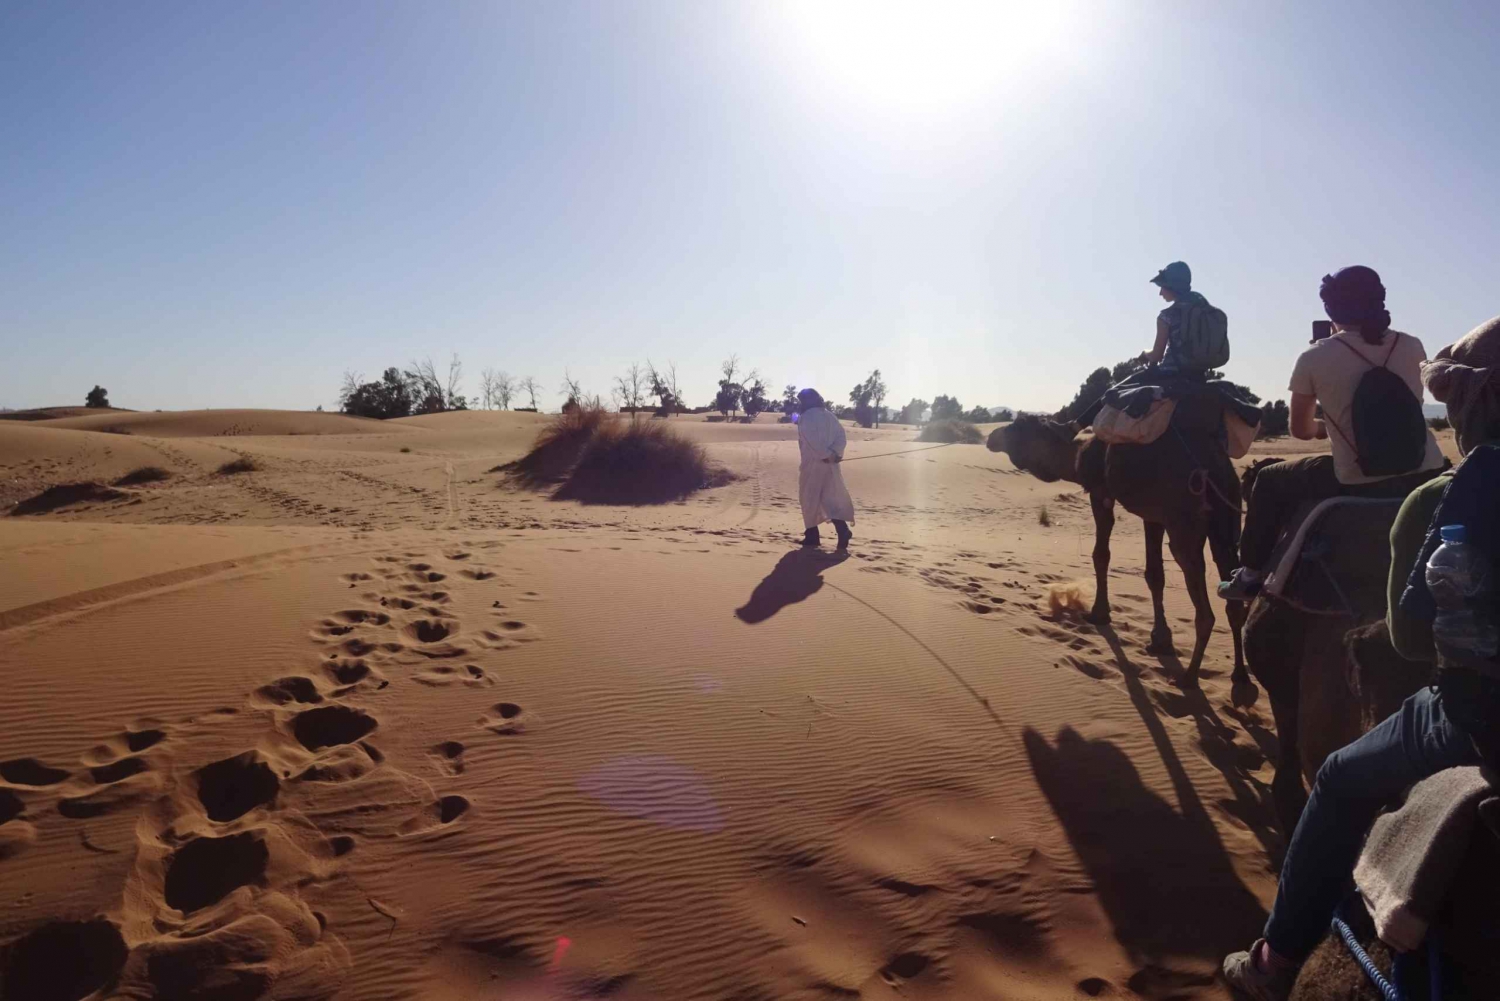 From Marrakech: Private 3-Day Sahara to Merzouga Tour